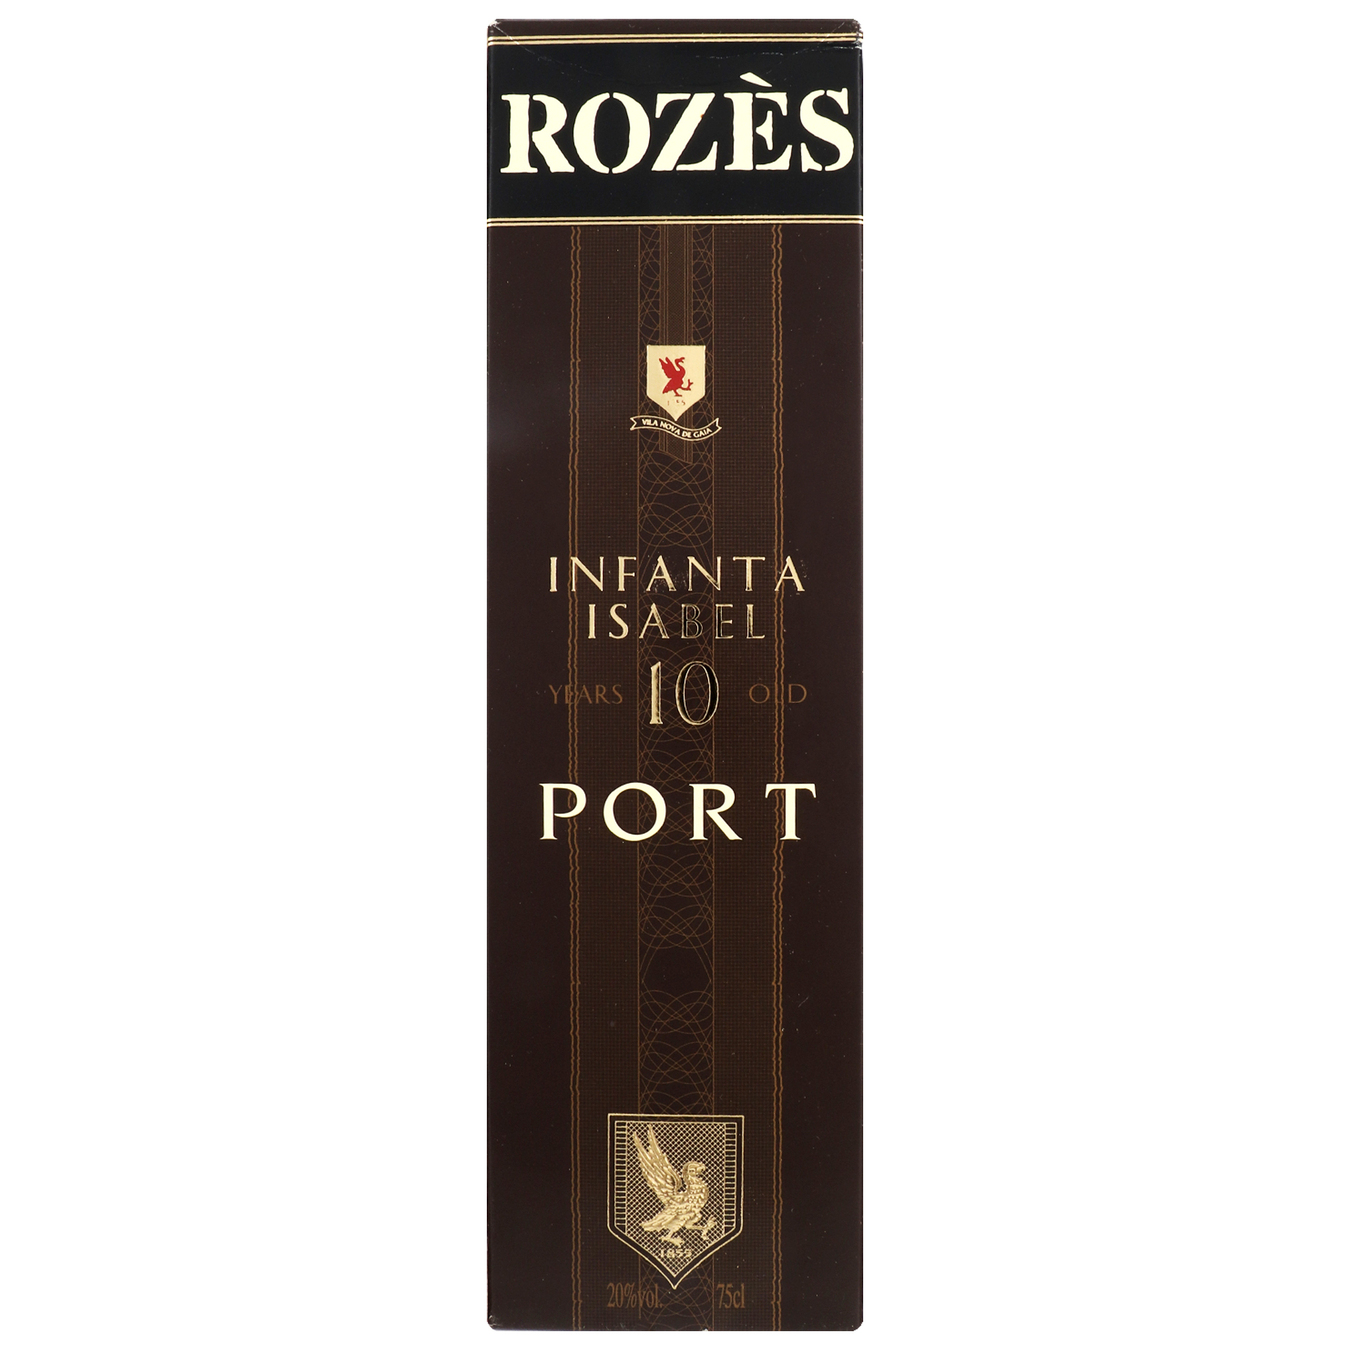 Вино Rozes Infanta Isabel Porto 10 лет красное сладкое крепленое 20% 0,75л